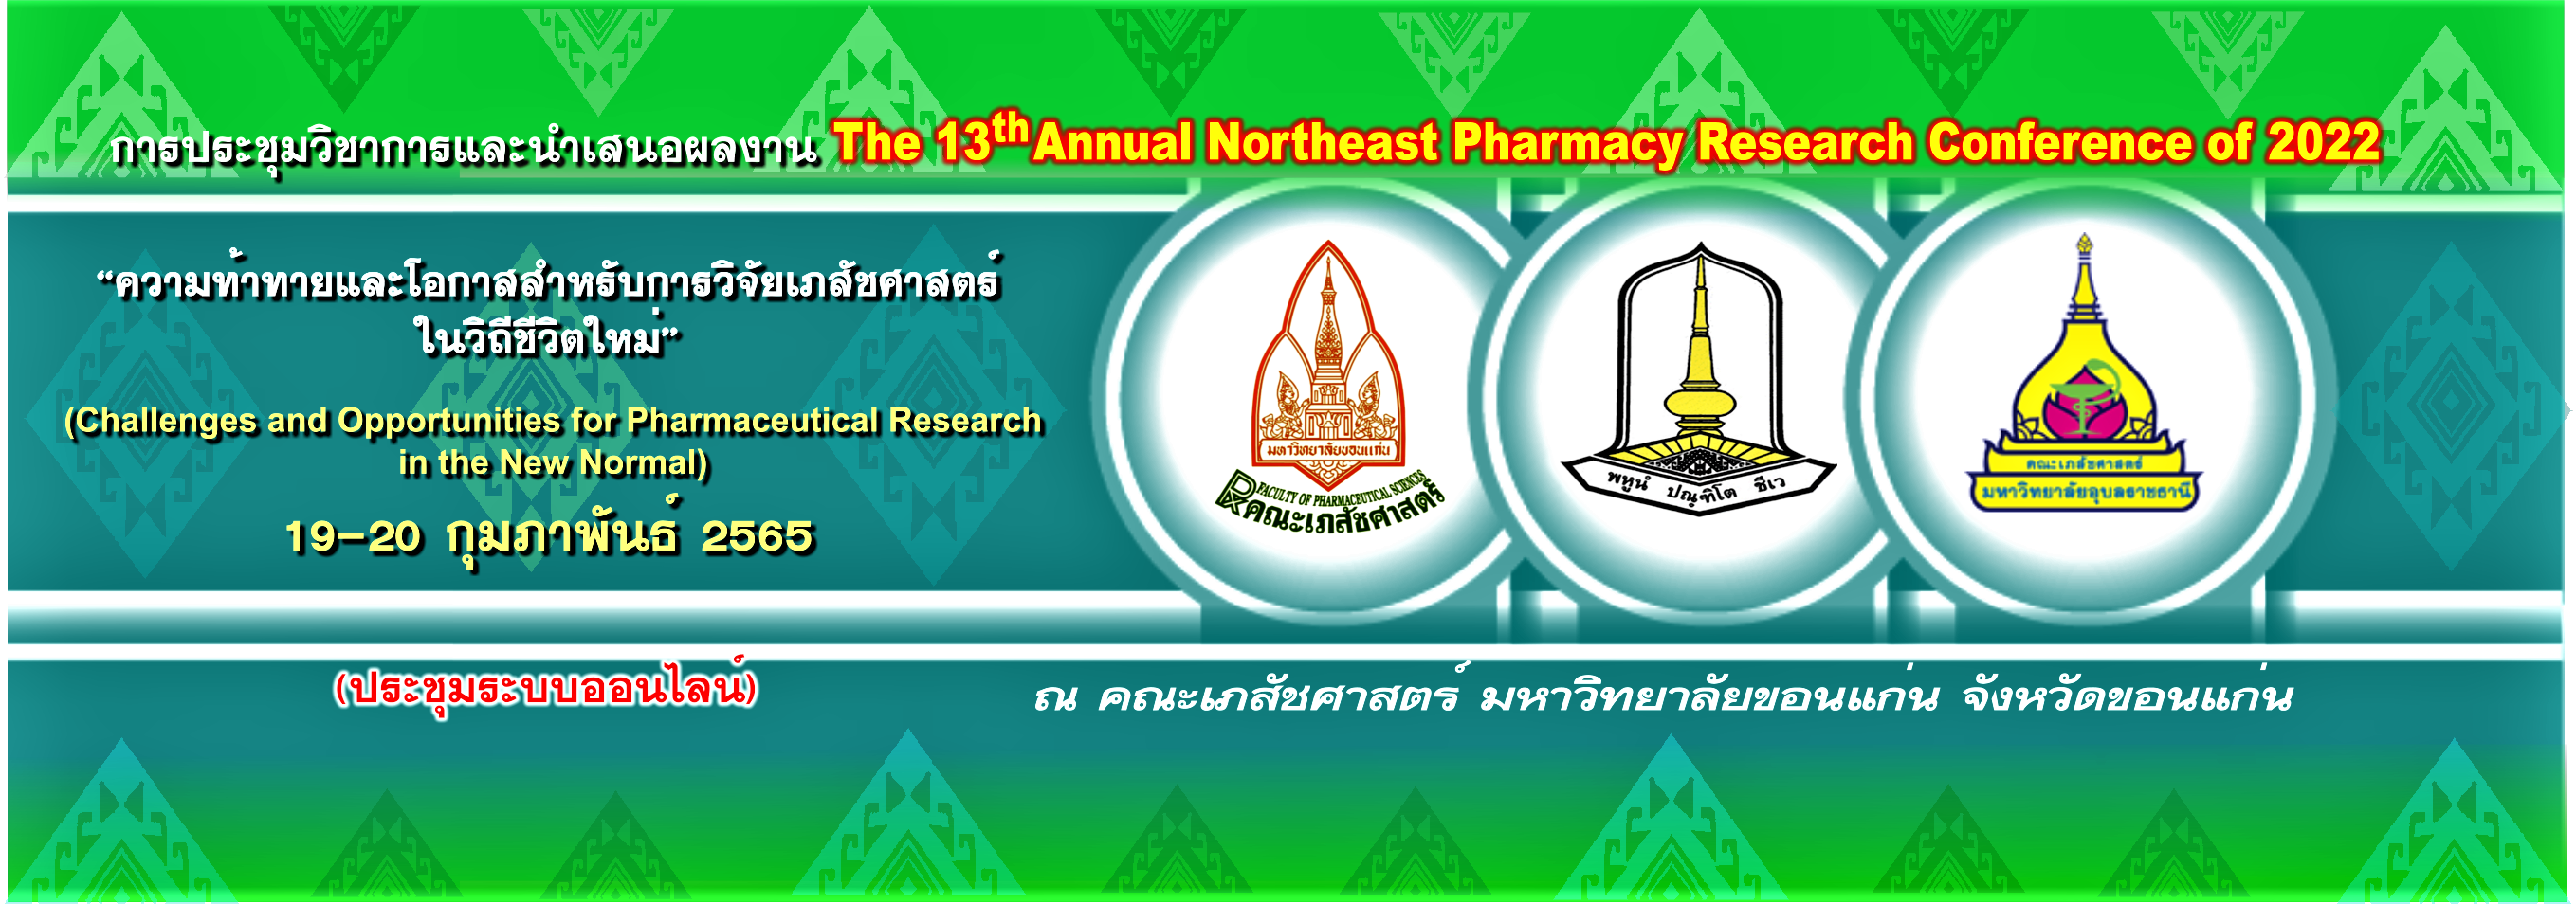 โครงการประชุมวิชาการและนำเสนอผลงานทางวิชาการ คณะเภสัชศาสตร์ 3 สถาบัน ครั้งที่ 13 (The 13th Annual Northeast Pharmacy Research Conference of 2022 “ความท้าทายและโอกาสสำหรับการวิจัยเภสัชศาสตร์ในวิถีชีวิตใหม่” “Challenges and Opportunities for Pharmaceutical Research in the New Normal”)